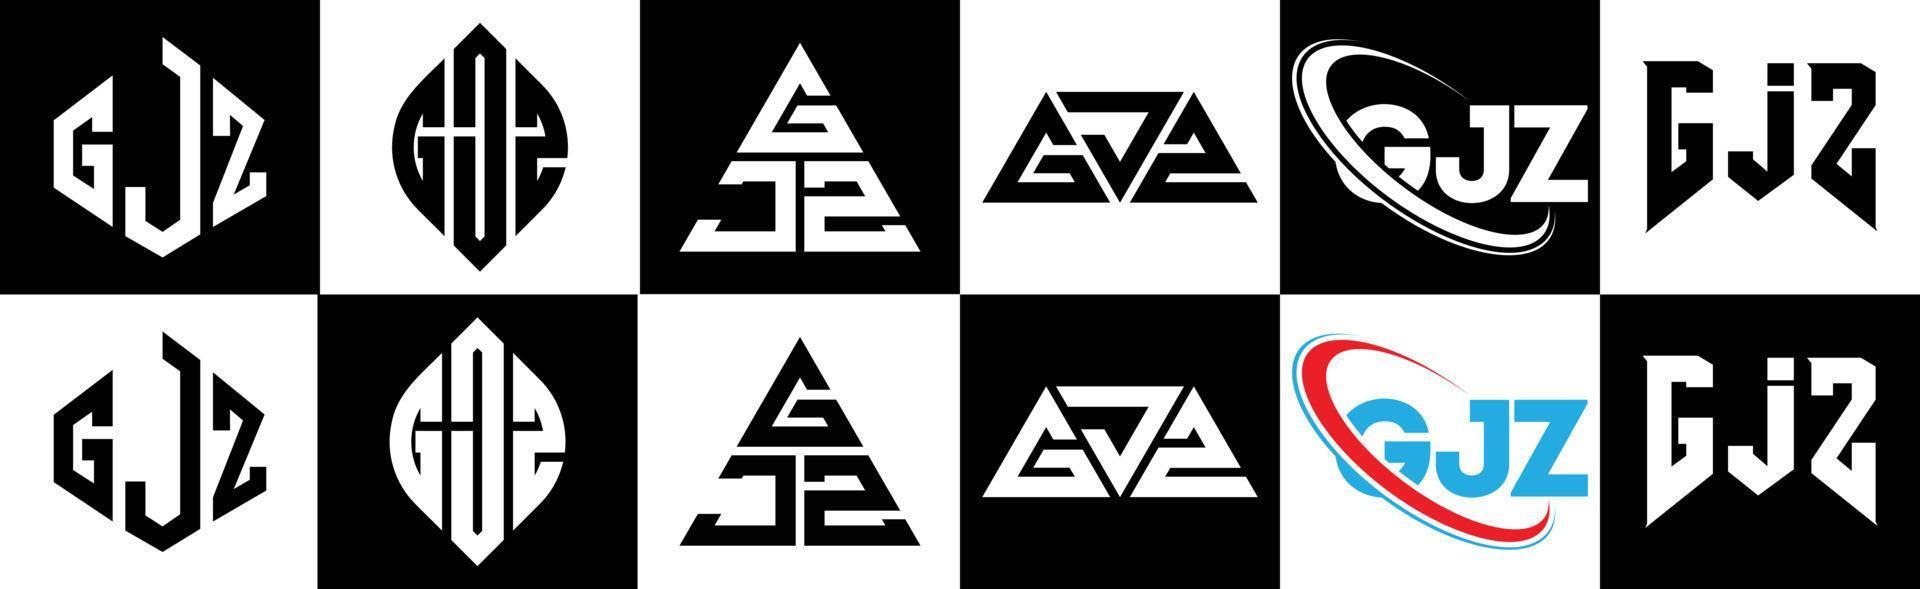 Diseño de logotipo de letra gjz en seis estilos. polígono gjz, círculo, triángulo, hexágono, estilo plano y simple con logotipo de letra de variación de color blanco y negro en una mesa de trabajo. logotipo minimalista y clásico de gjz vector